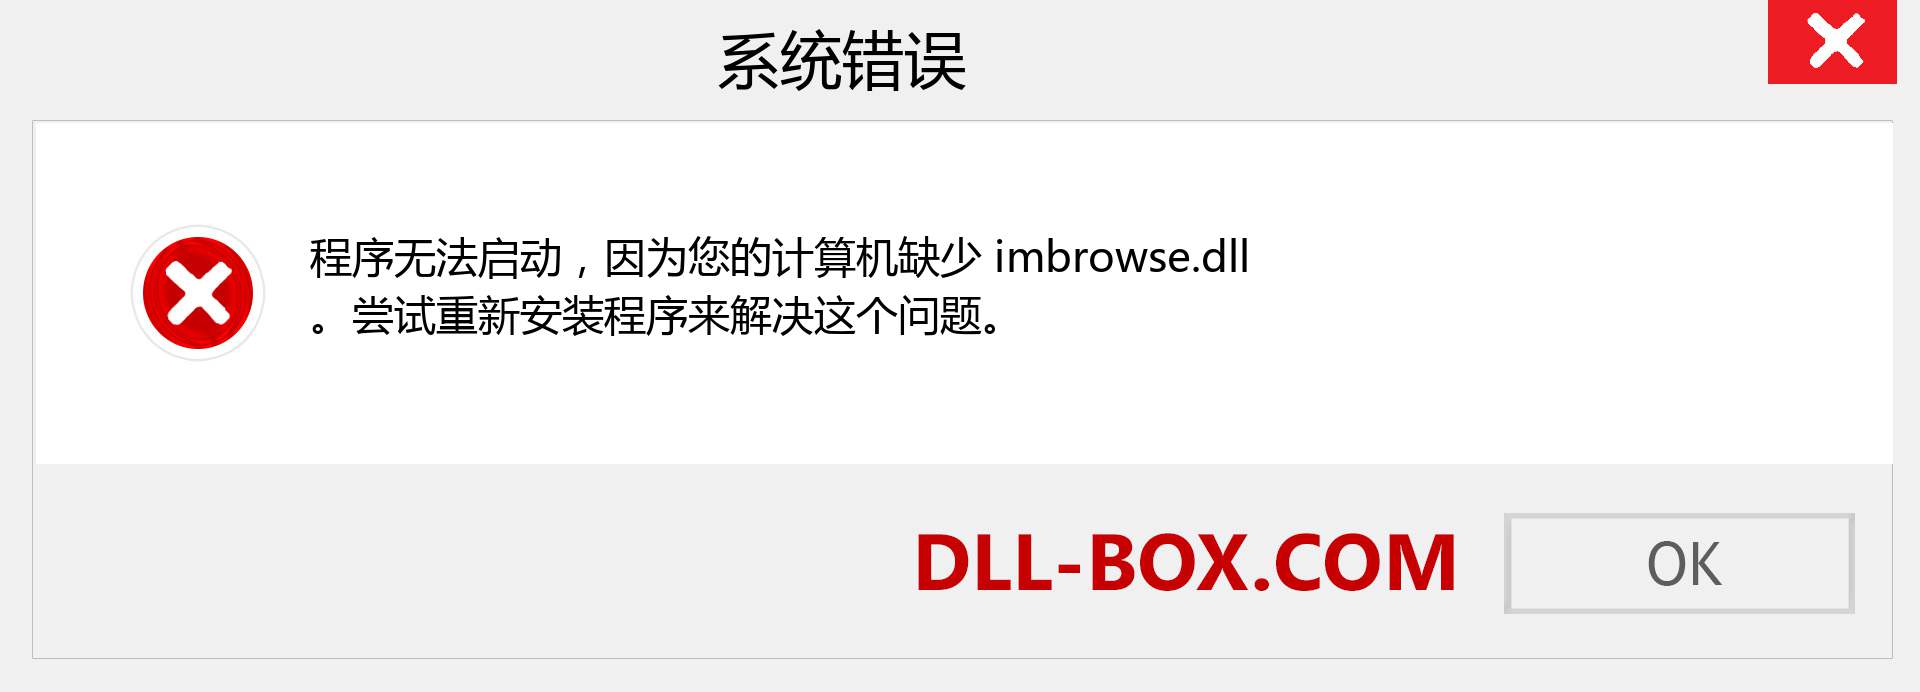 imbrowse.dll 文件丢失？。 适用于 Windows 7、8、10 的下载 - 修复 Windows、照片、图像上的 imbrowse dll 丢失错误